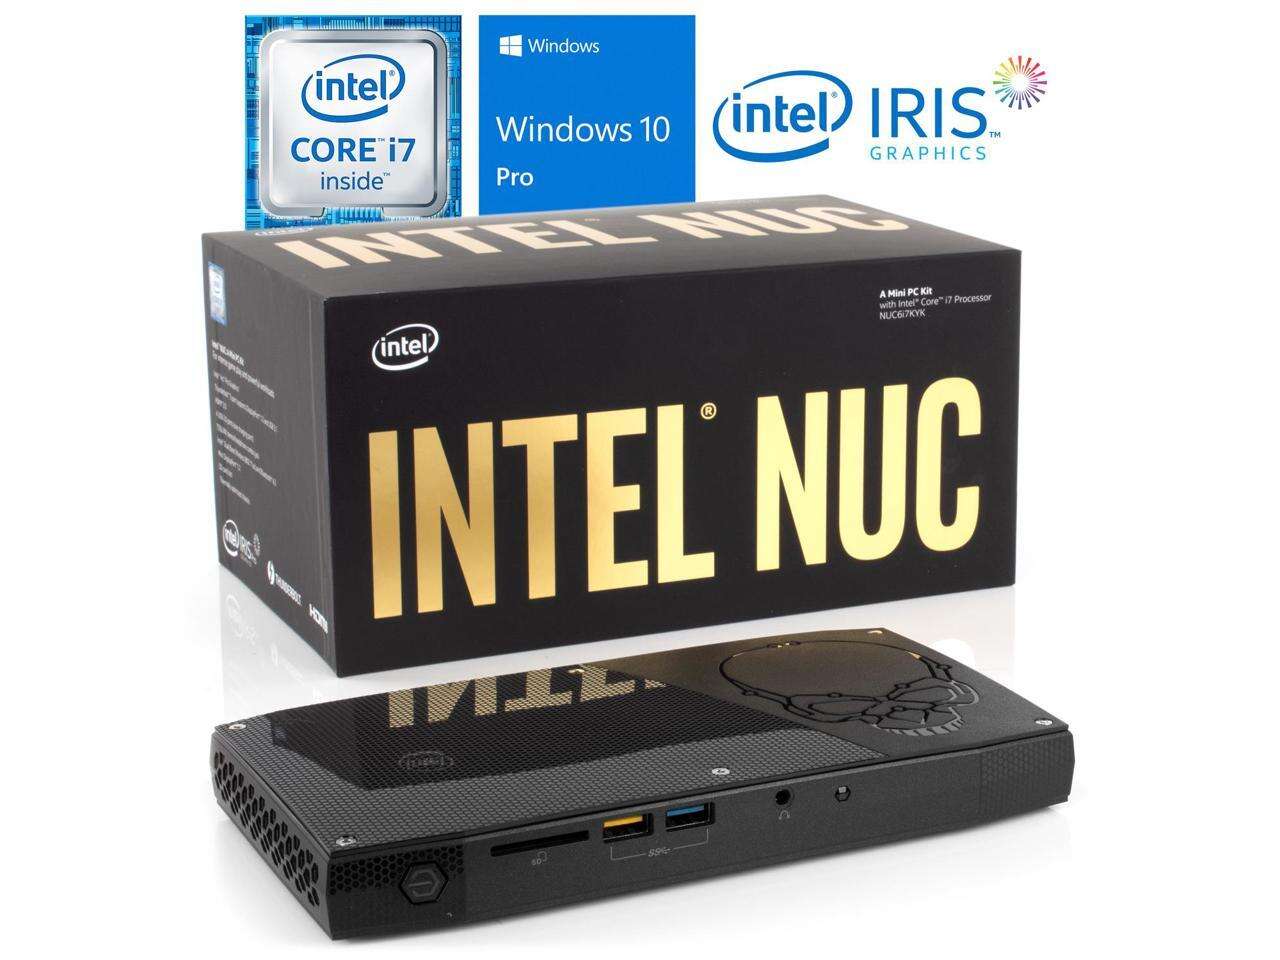 Intel NUC6i7KYK Mini PC, Intel Core i7-6770HQ Upto 3.5GHz, 16GB RAM, 128GB NVMe SSD, HDMI, Thunderbolt , Mini DisplayPort, Card Reader, Wi-Fi, Bluetooth, Windows 10 Pro